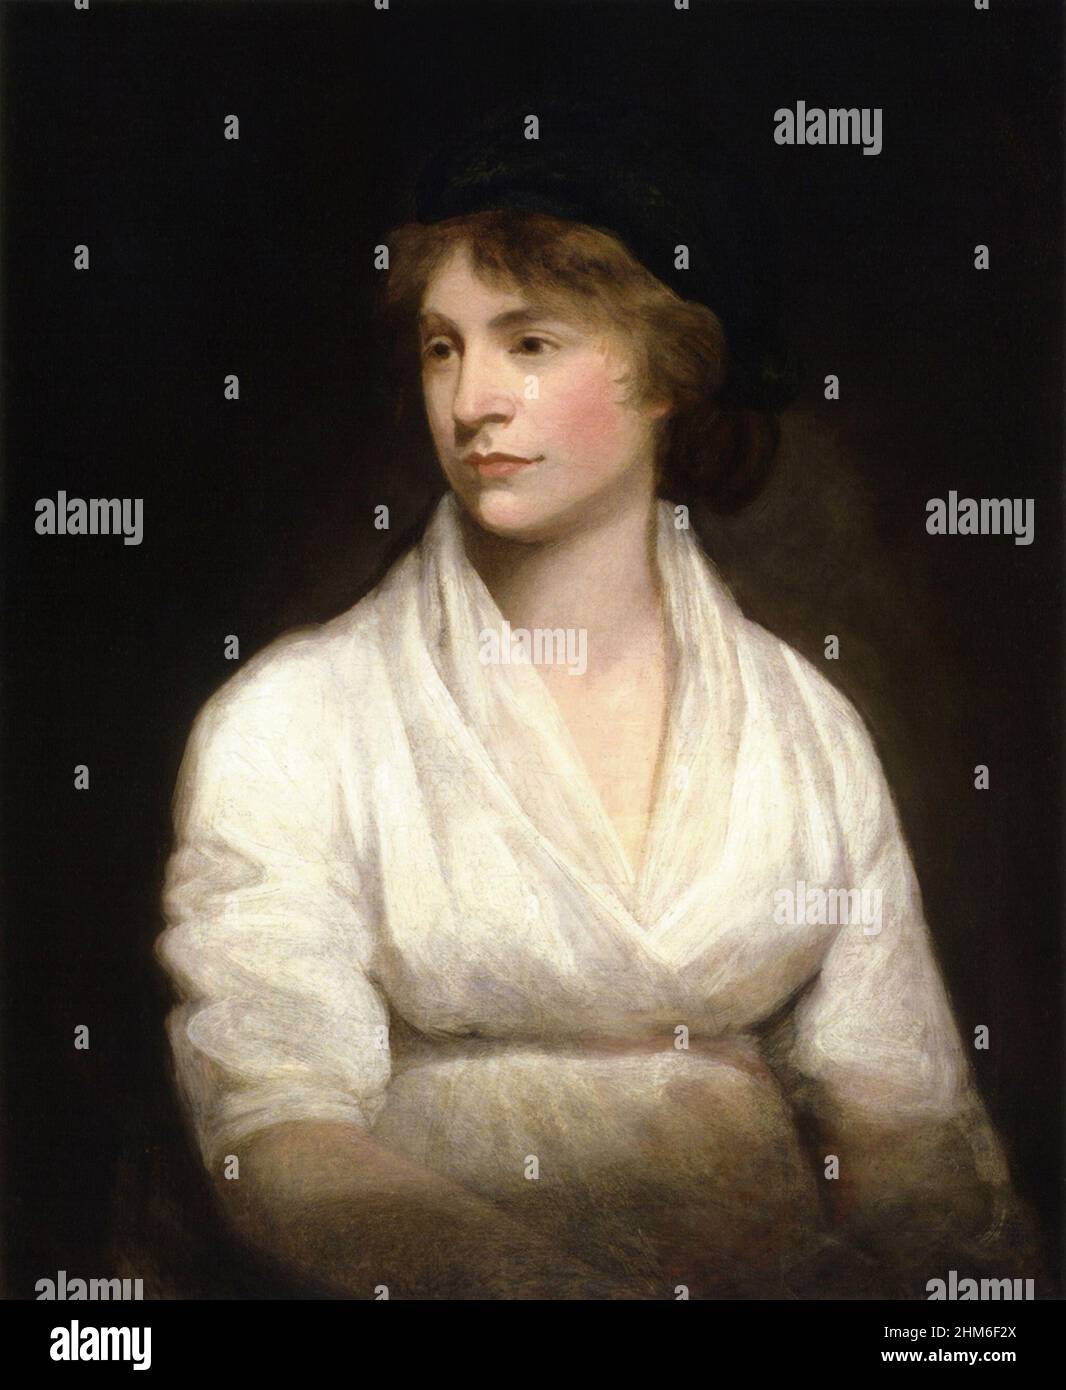 Un ritratto della scrittrice inglese Mary Wollstonecraft che era la madre di Mary Shelley, autore di Frankenstein. Il ritratto è del 1791 quando aveva 32 anni. Ritratto dal 1797 quando aveva 38 anni. Foto Stock